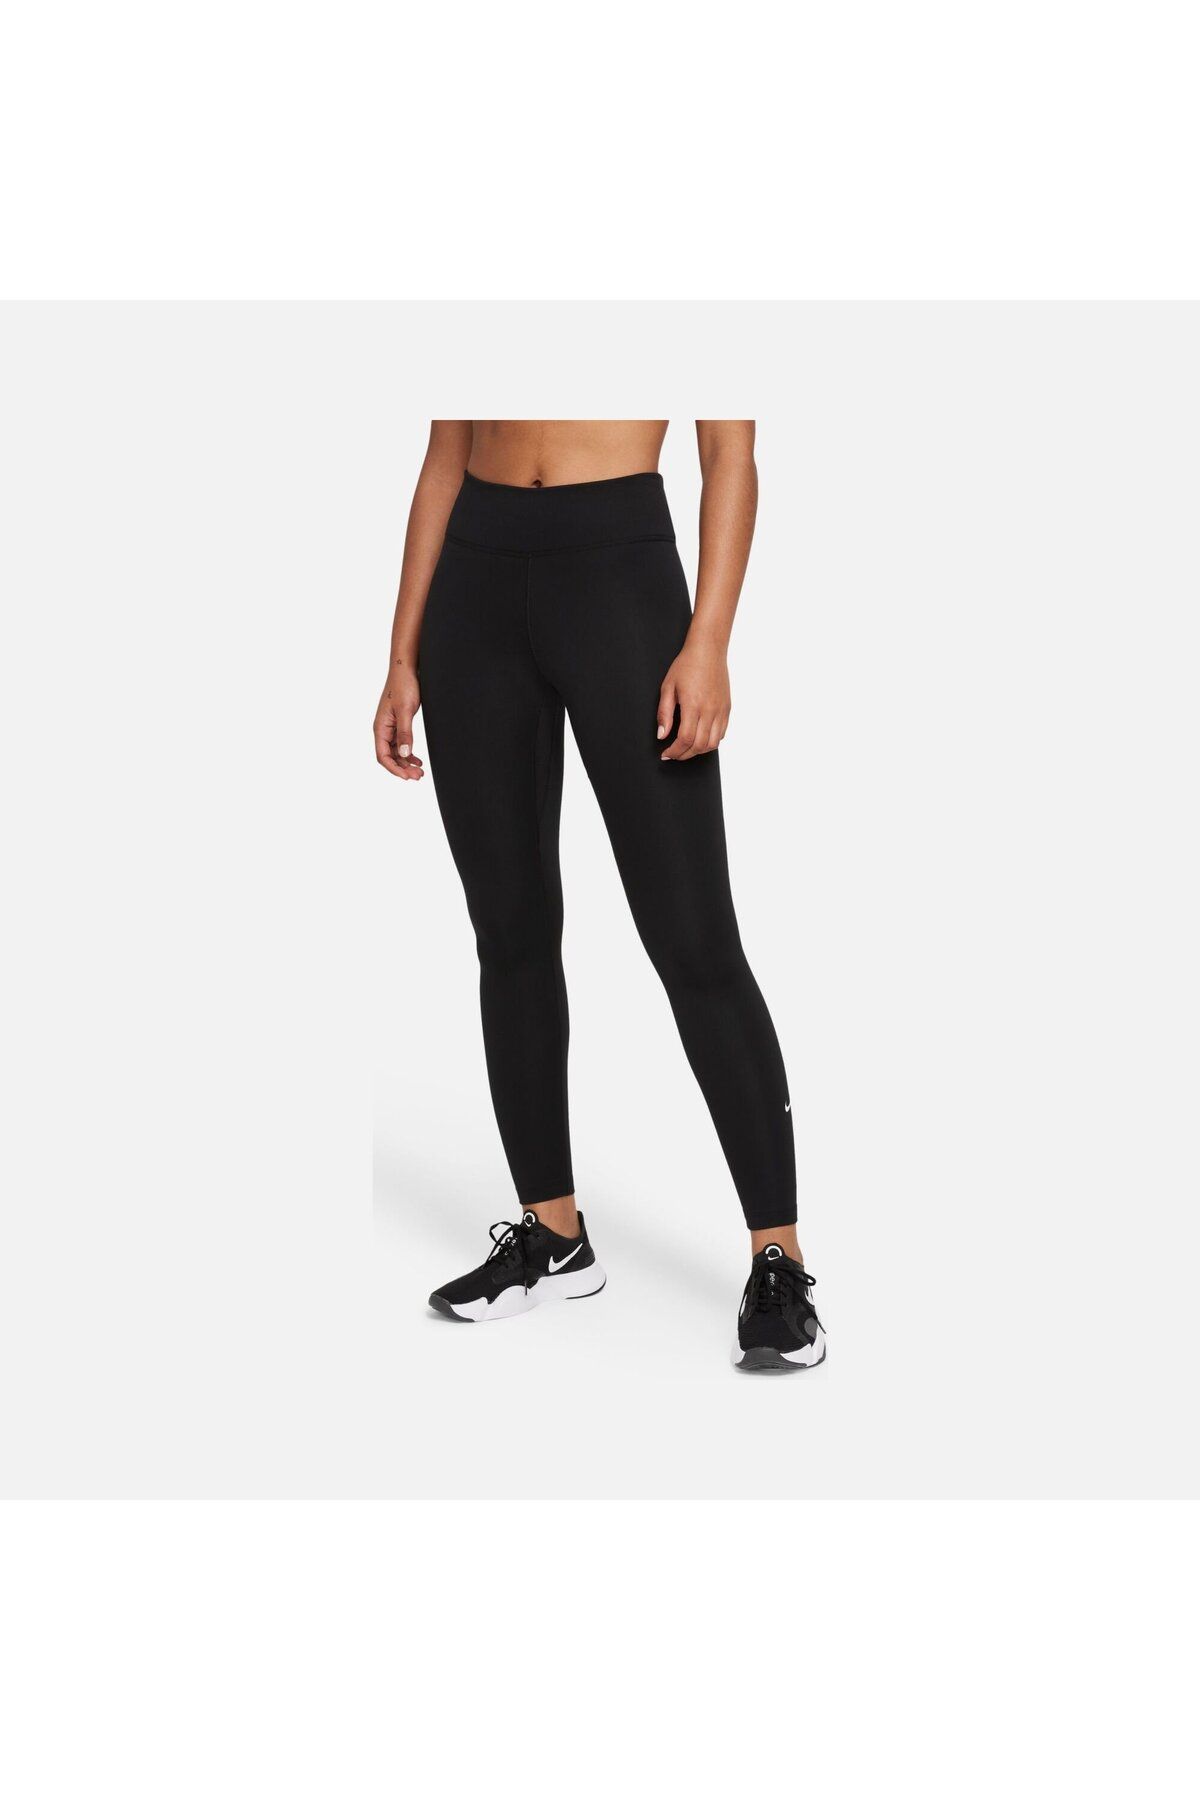 Nike One Women's Black/White Mid-Rise Leggings ( DD0252-010) Size